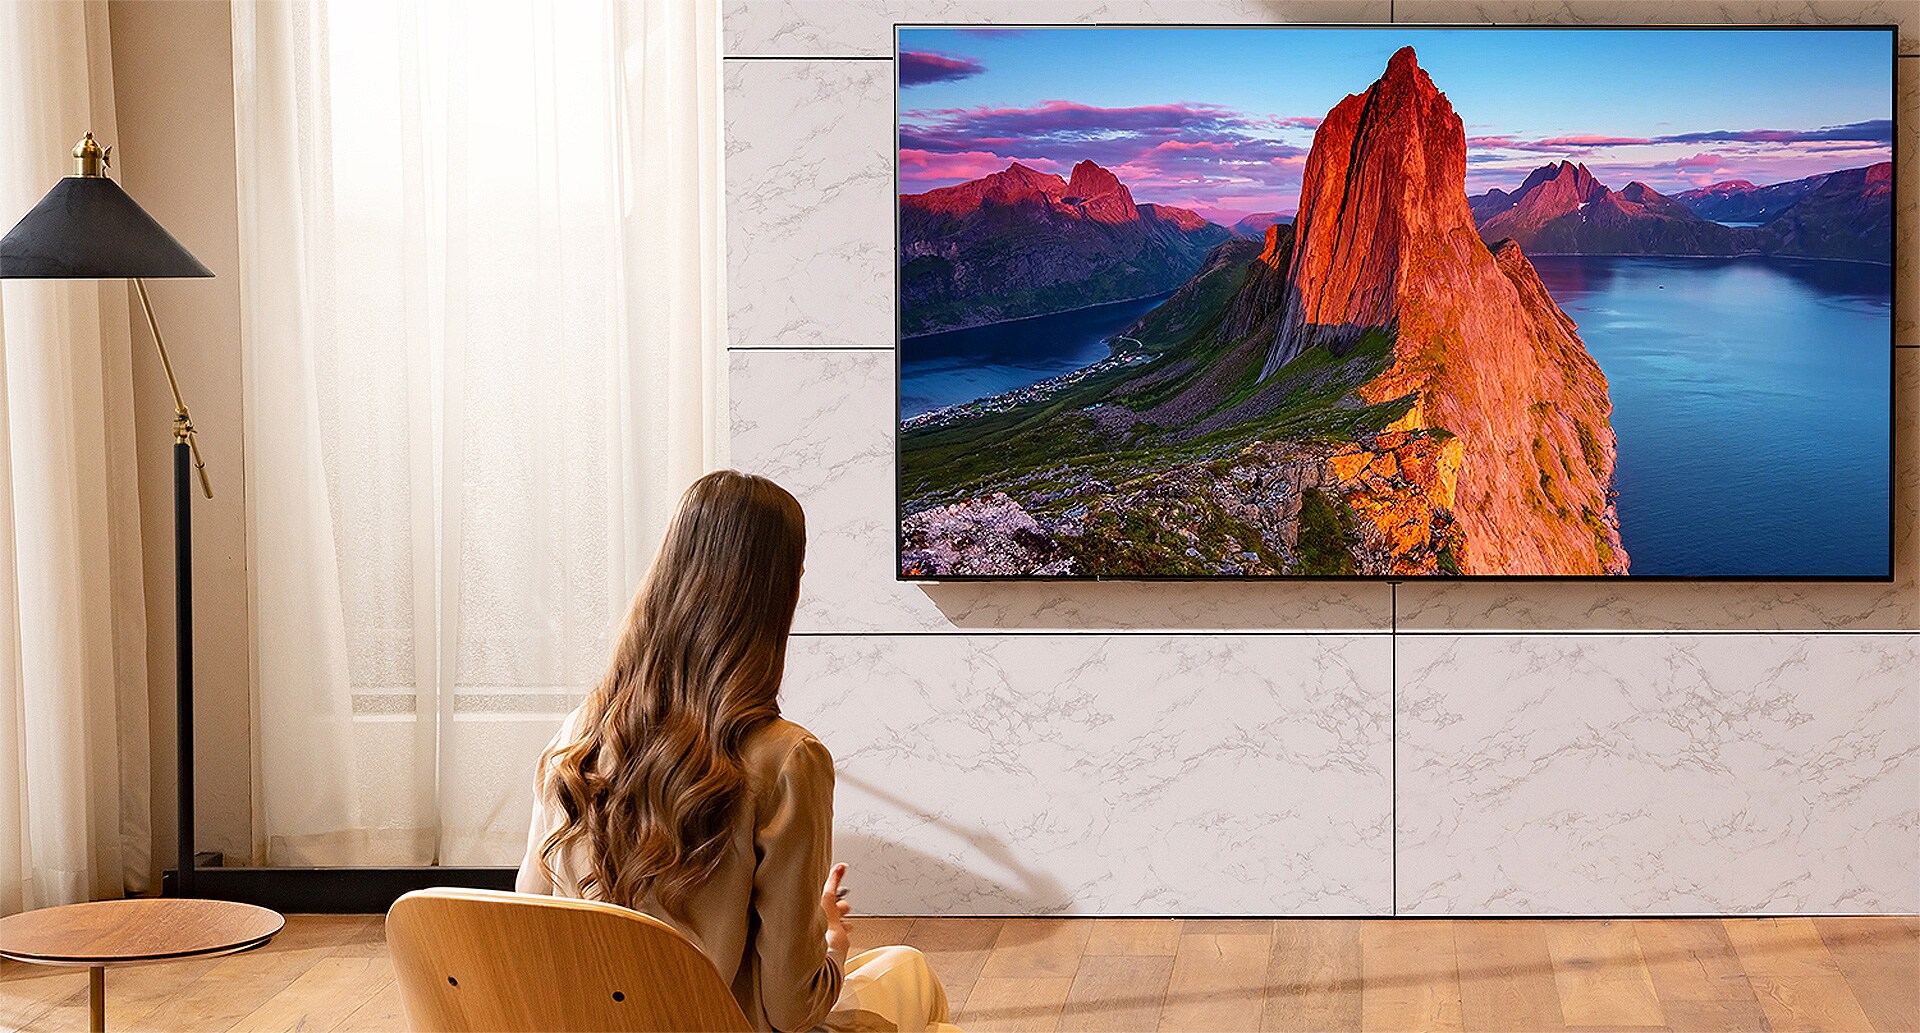 Una mujer mira la televisión en la sala de estar. Un paisaje horizontal está en la pantalla.